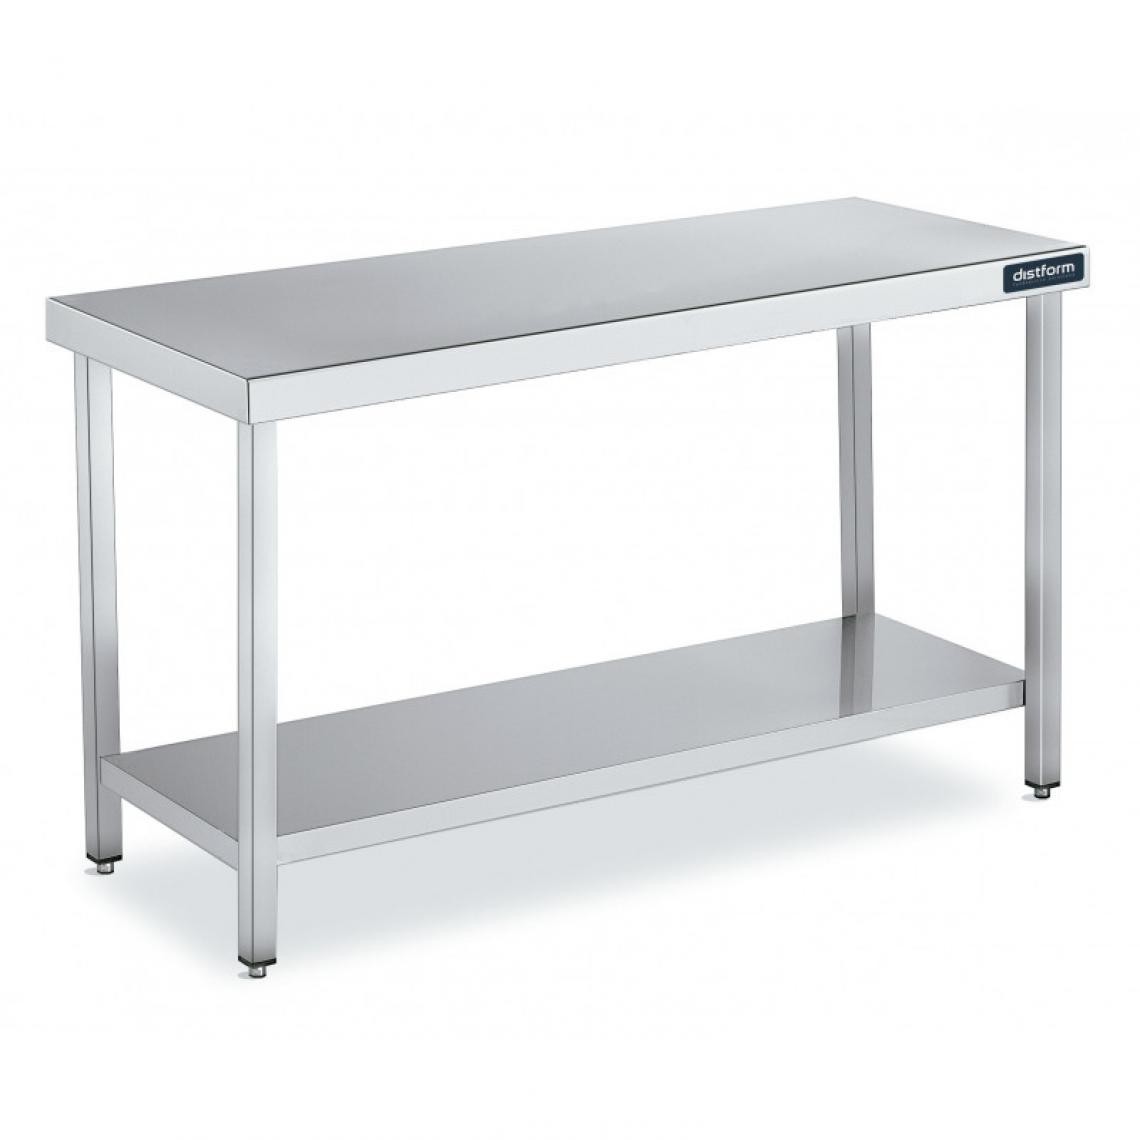 DISTFORM - Table Centrale en Inox avec 1 étagère Profondeur 600 mm - Distform - Acier inoxydable600 x 600 - Tables à manger